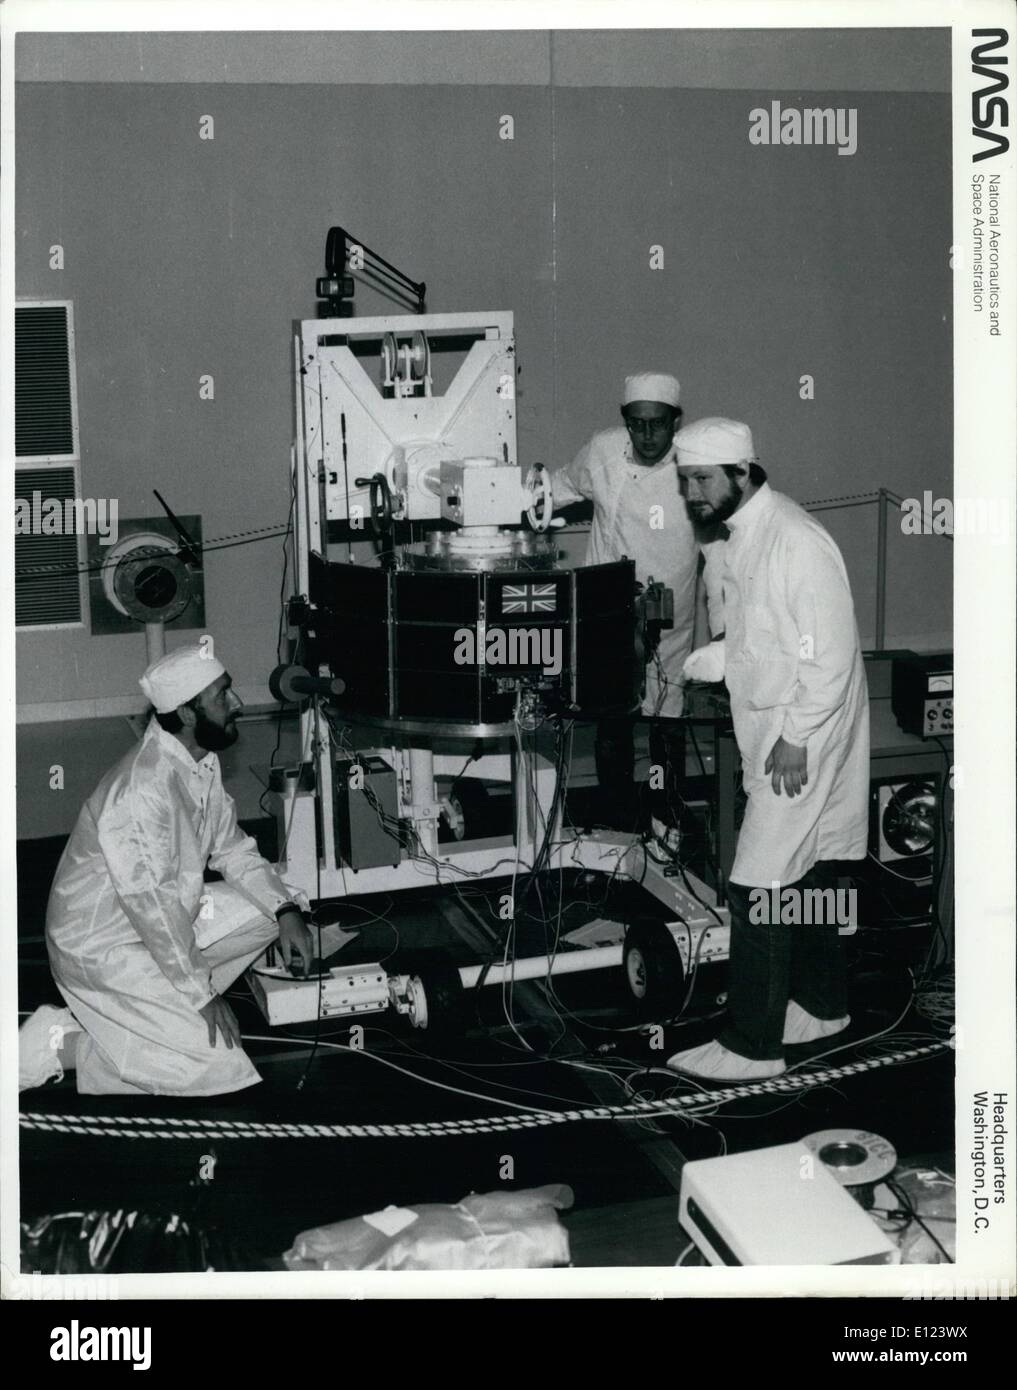 Lug. 07, 1984 - Il Centro Spaziale Kennedy, Fla. - ingegneri britannici condurre test sul Regno Unito Subsatellite, parte della tre-navetta spaziale internazionale Magnetospheric attivo Tracar antiparticolato Explorer (AMPTE) missione prevista per il lancio il 9 Agosto a bordo di una singola roccia Delta. Il 172-pound UKS contiene un set completo di plasma degli strumenti di misurazione per registrare gli effetti di nuvole chimiche rilasciate dal tedesco-occidentale della build di rilascio di ioni Modula Foto Stock